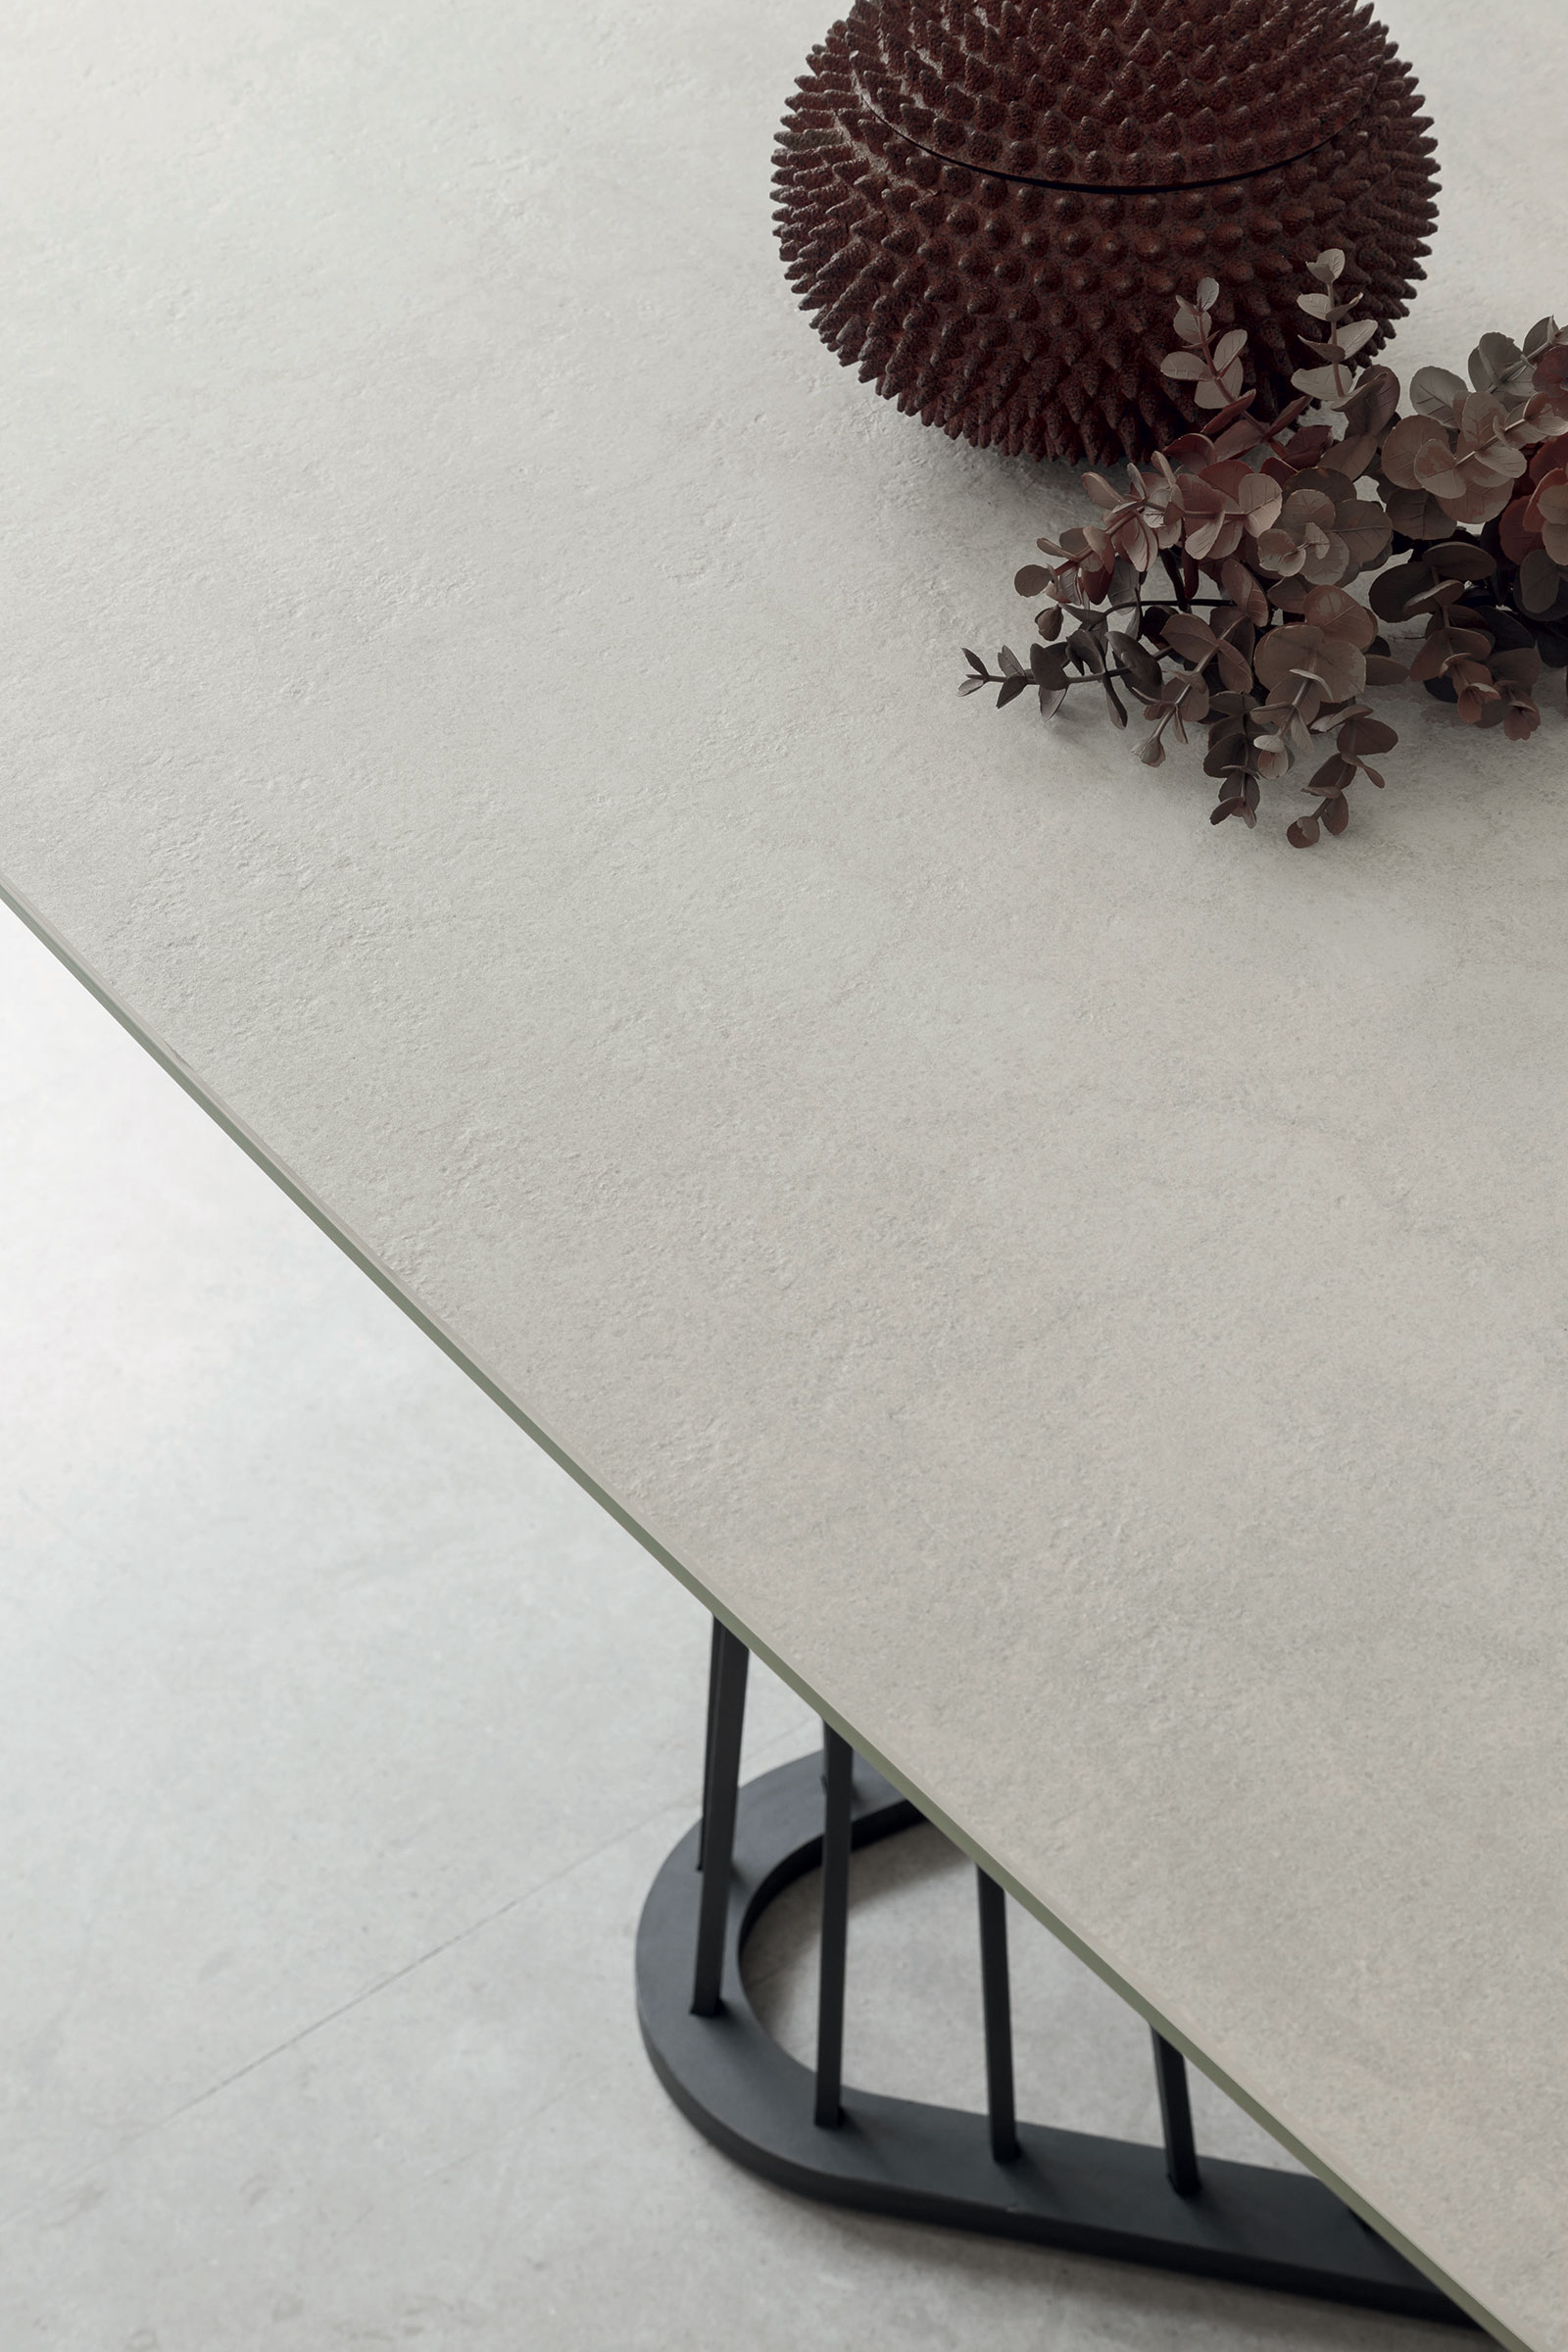 Tavolo allungabile sagomato a botte con piano in ceramica. Design Andrea Lucatello. Arredamento made in Italy di alta qualità in consegna gratis a domicilio